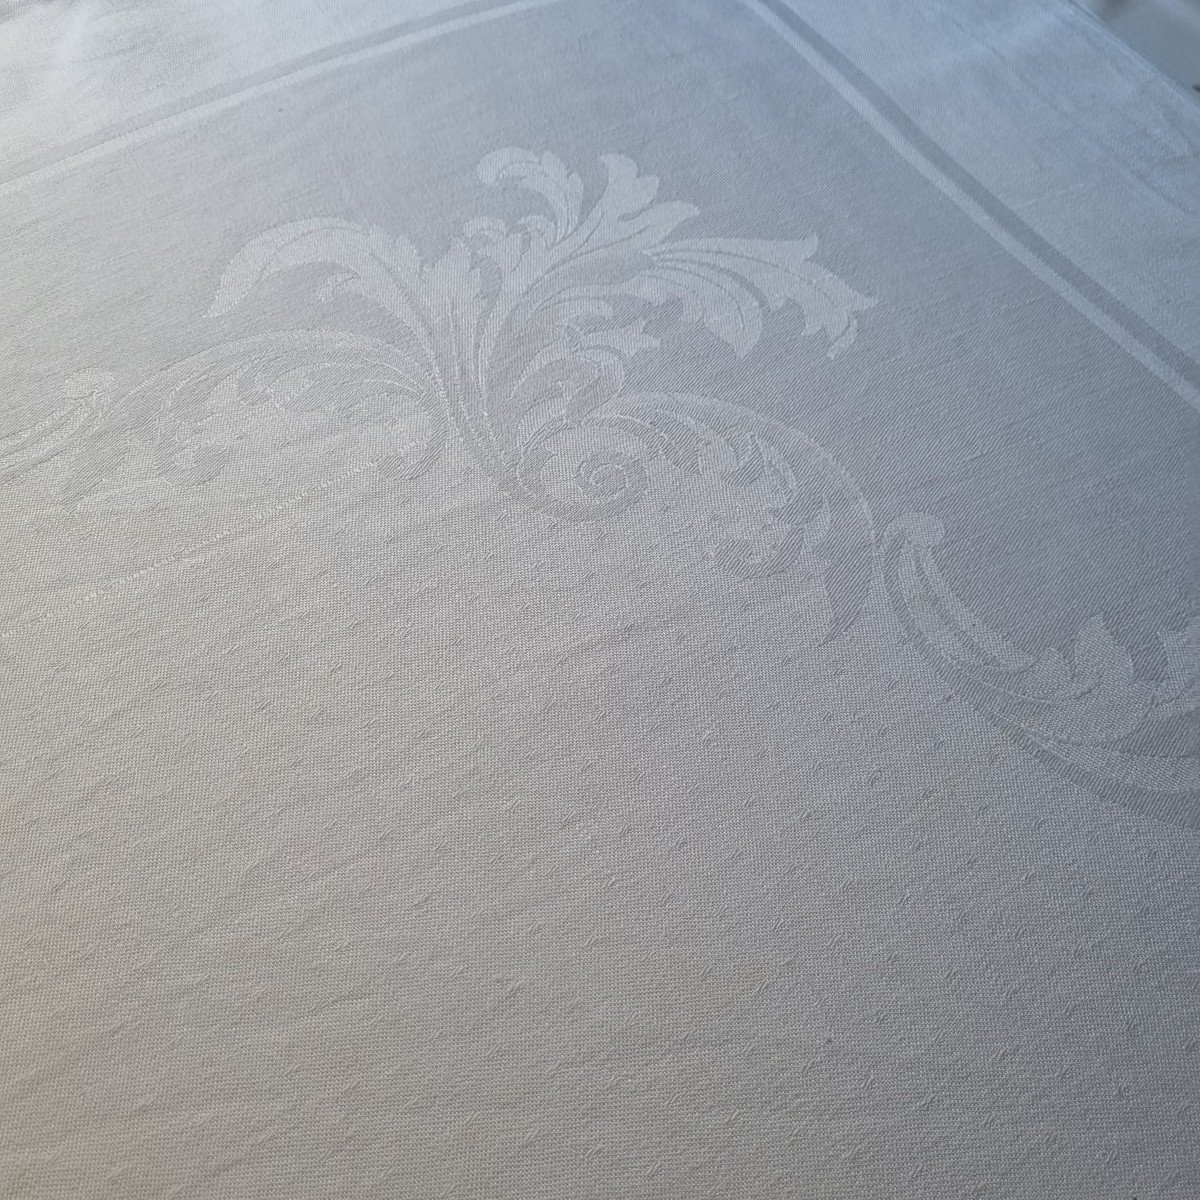 Damask Linen Tablecloth Circa 1900 Without Monogram Circa 1900 255 X 135 Cm-photo-2